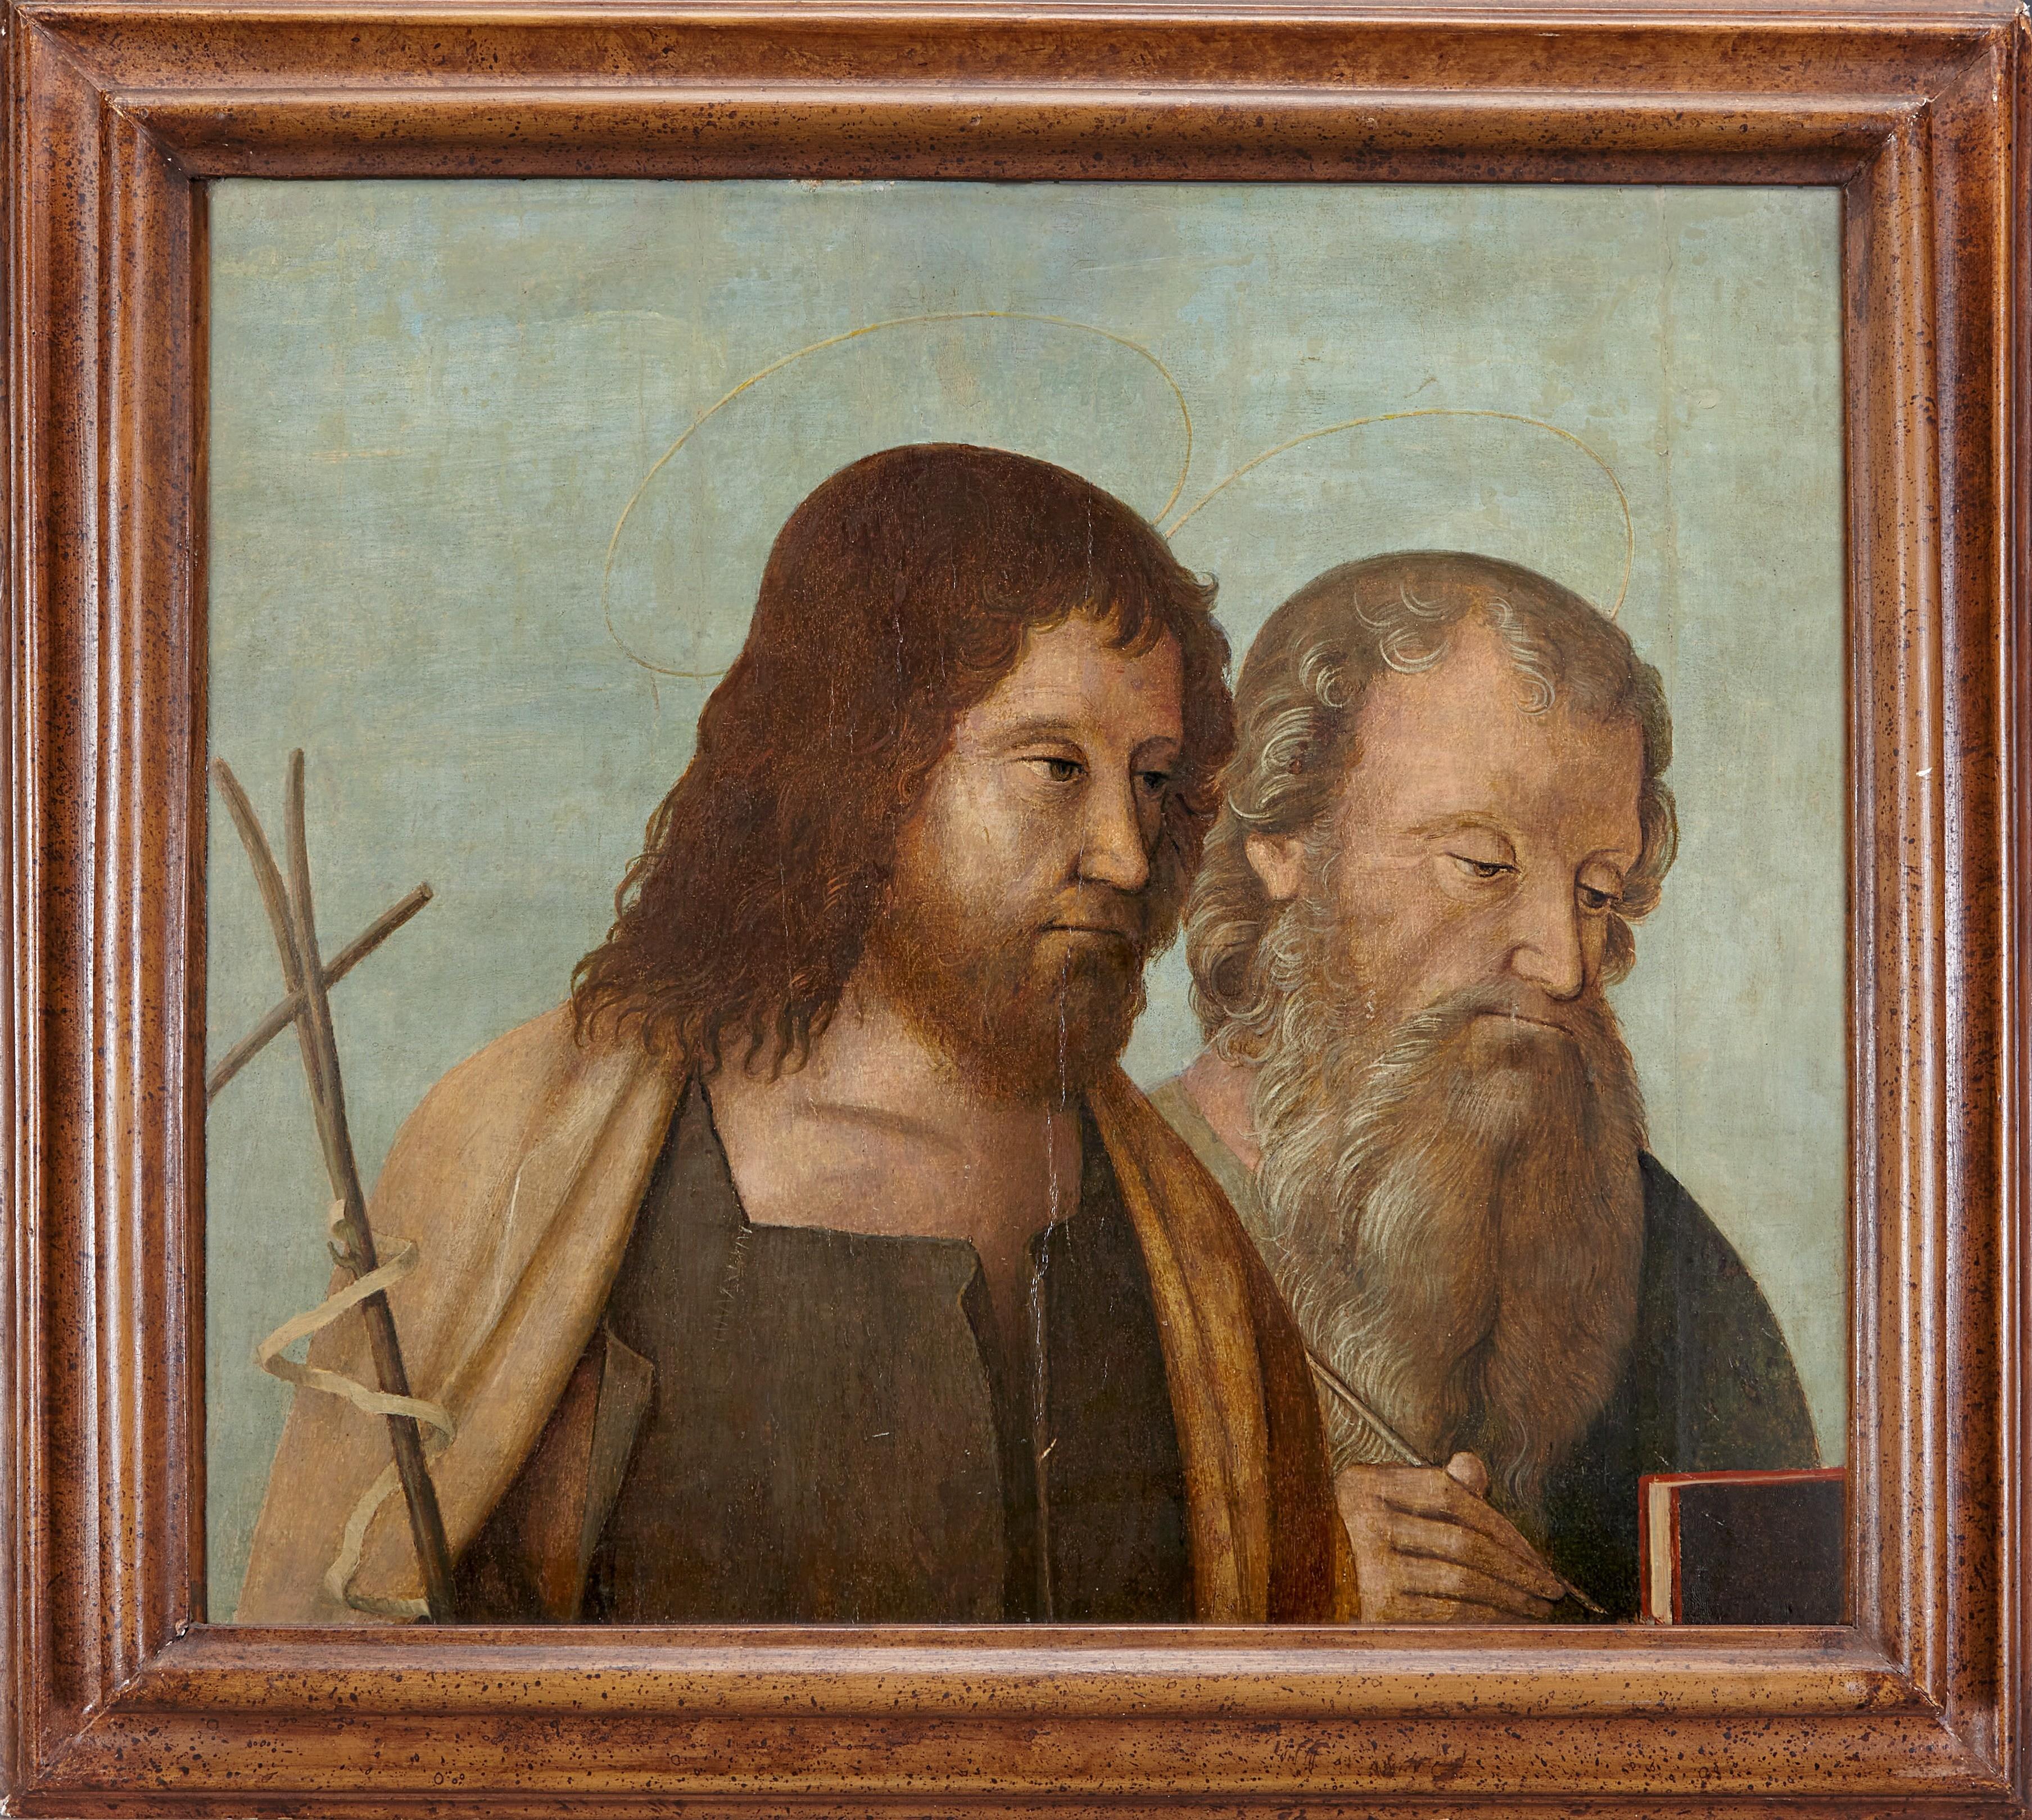 École vénitienne, début du XVIe siècle

Huile sur panneau, 49 x 56 cm.
Encadré (restaurations)

Ces deux tableaux, représentant Saint John et Saint Jérôme sur un panneau, et les saints Peters et Paul sur l'autre panneau, sont probablement des